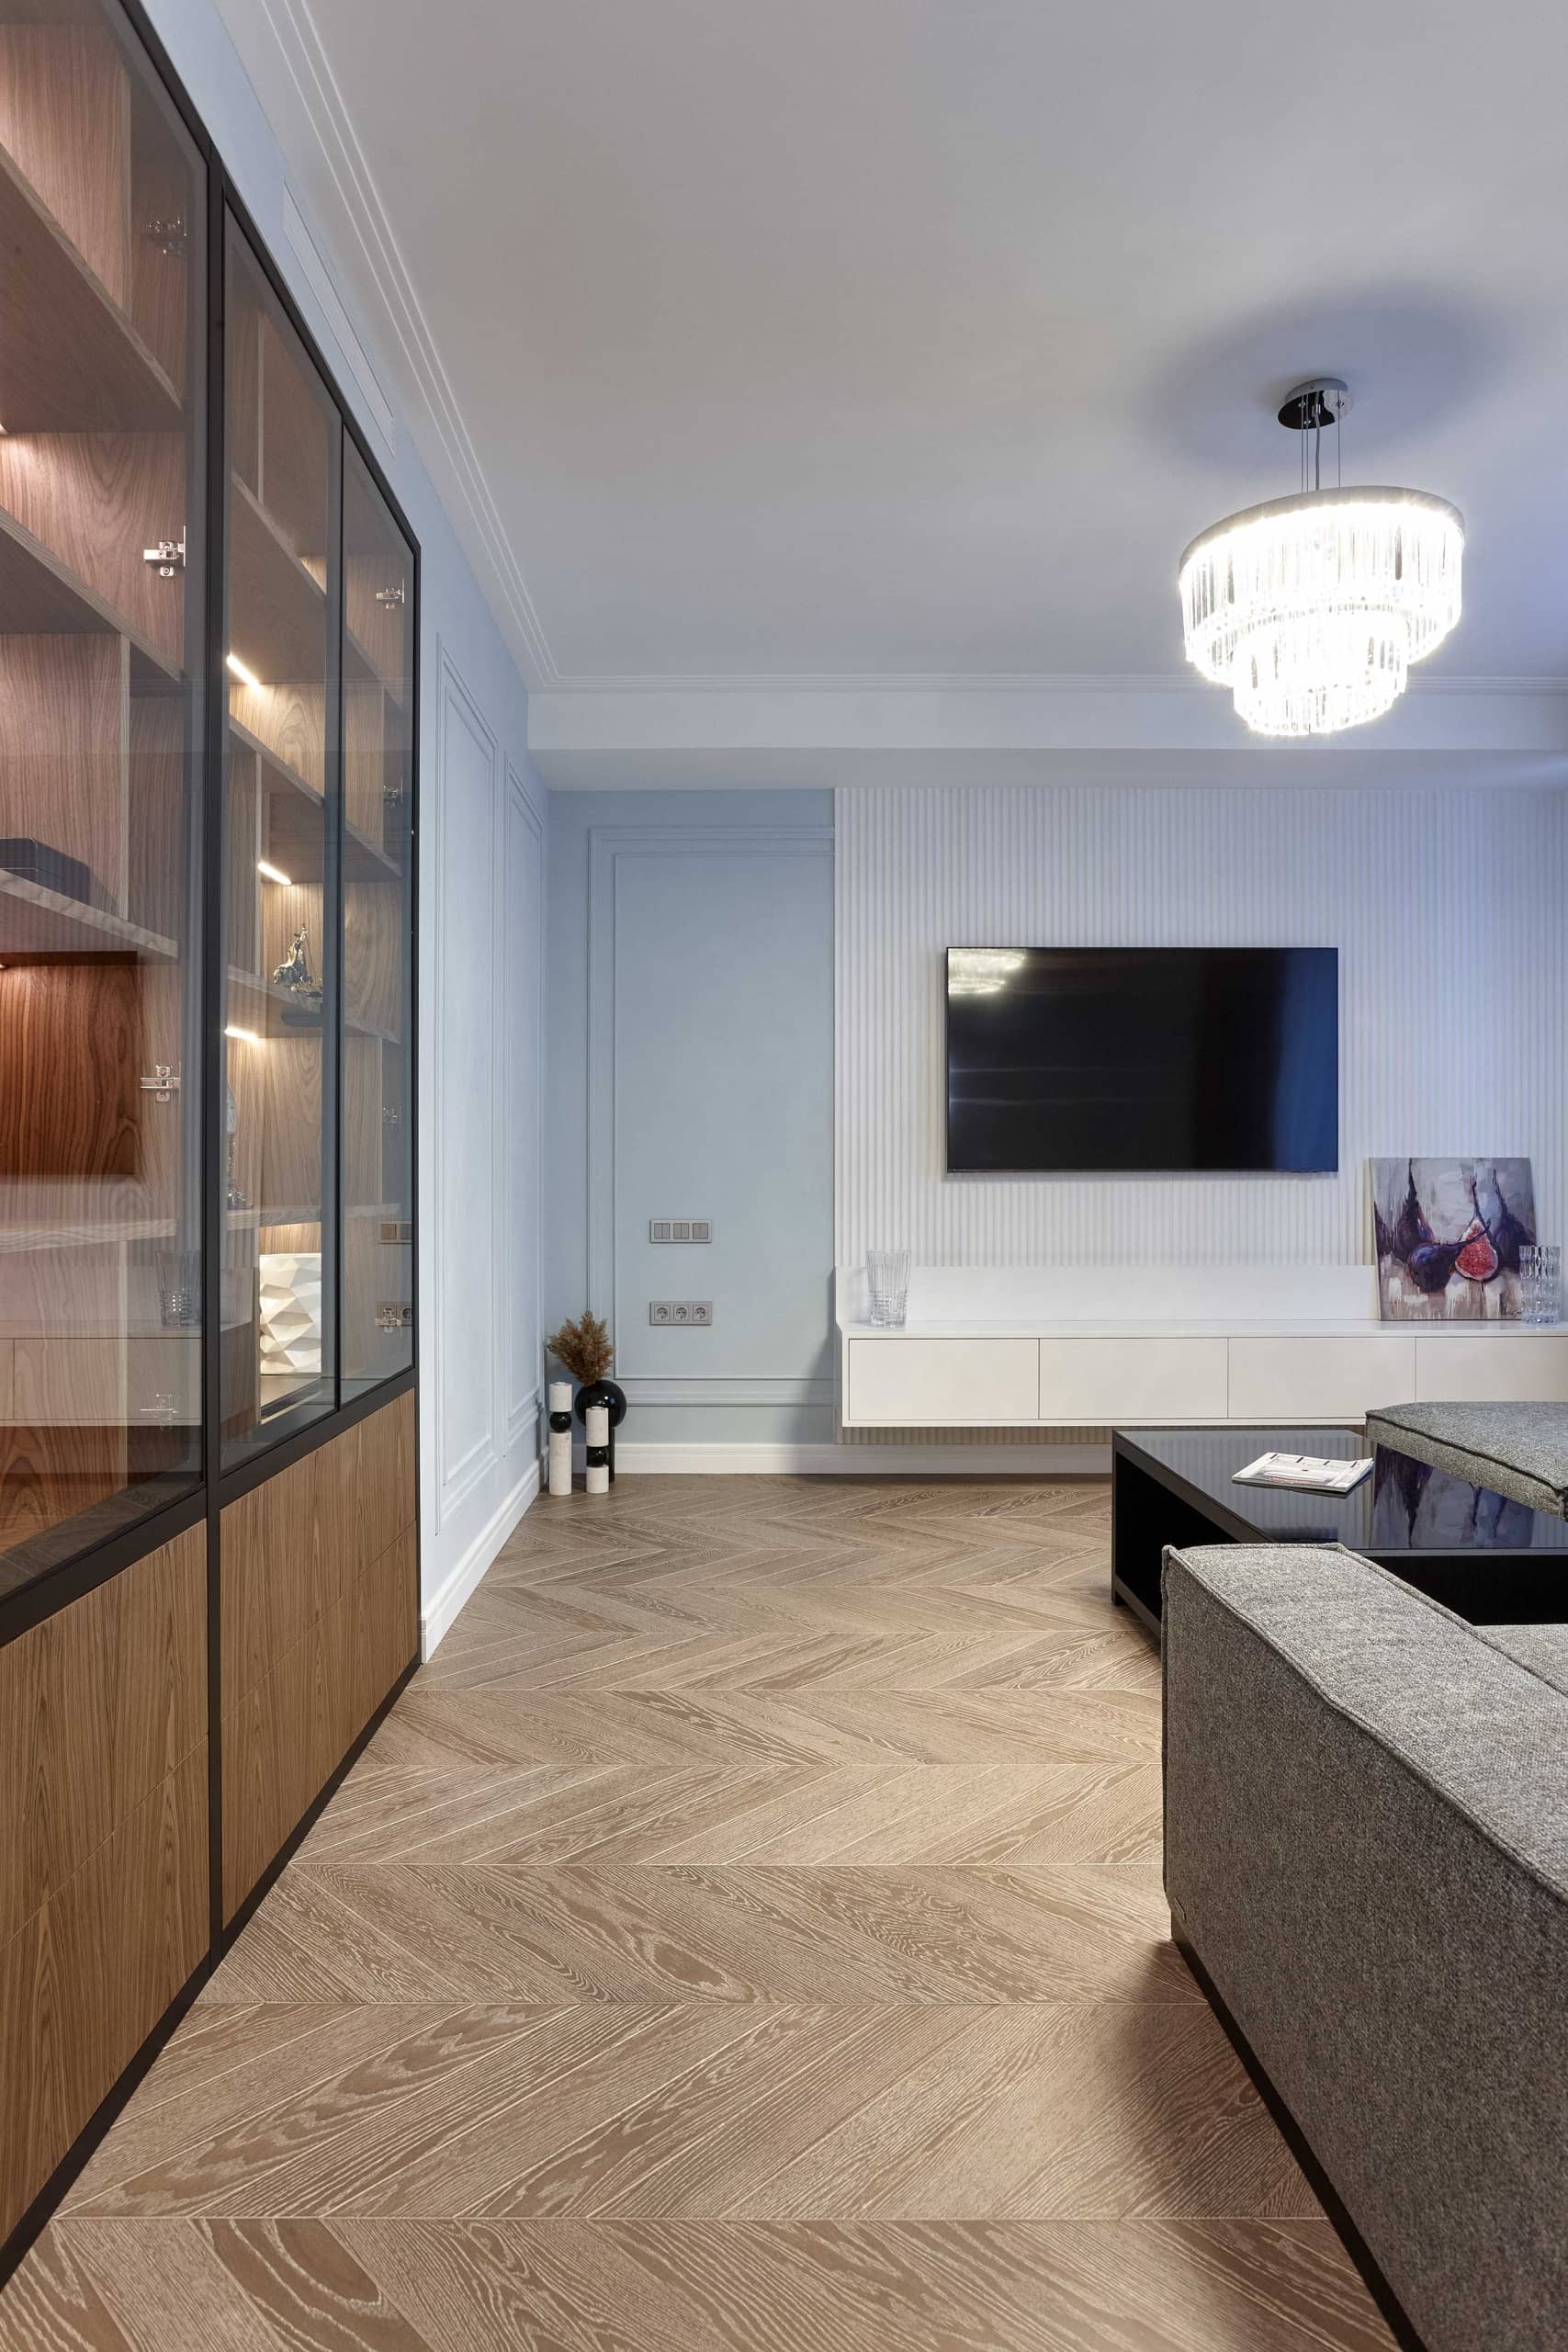 Оформление интерьера гостиной трехкомнатной квартиры в коричневый цвет в стиле современной классики. Фото № 68315.